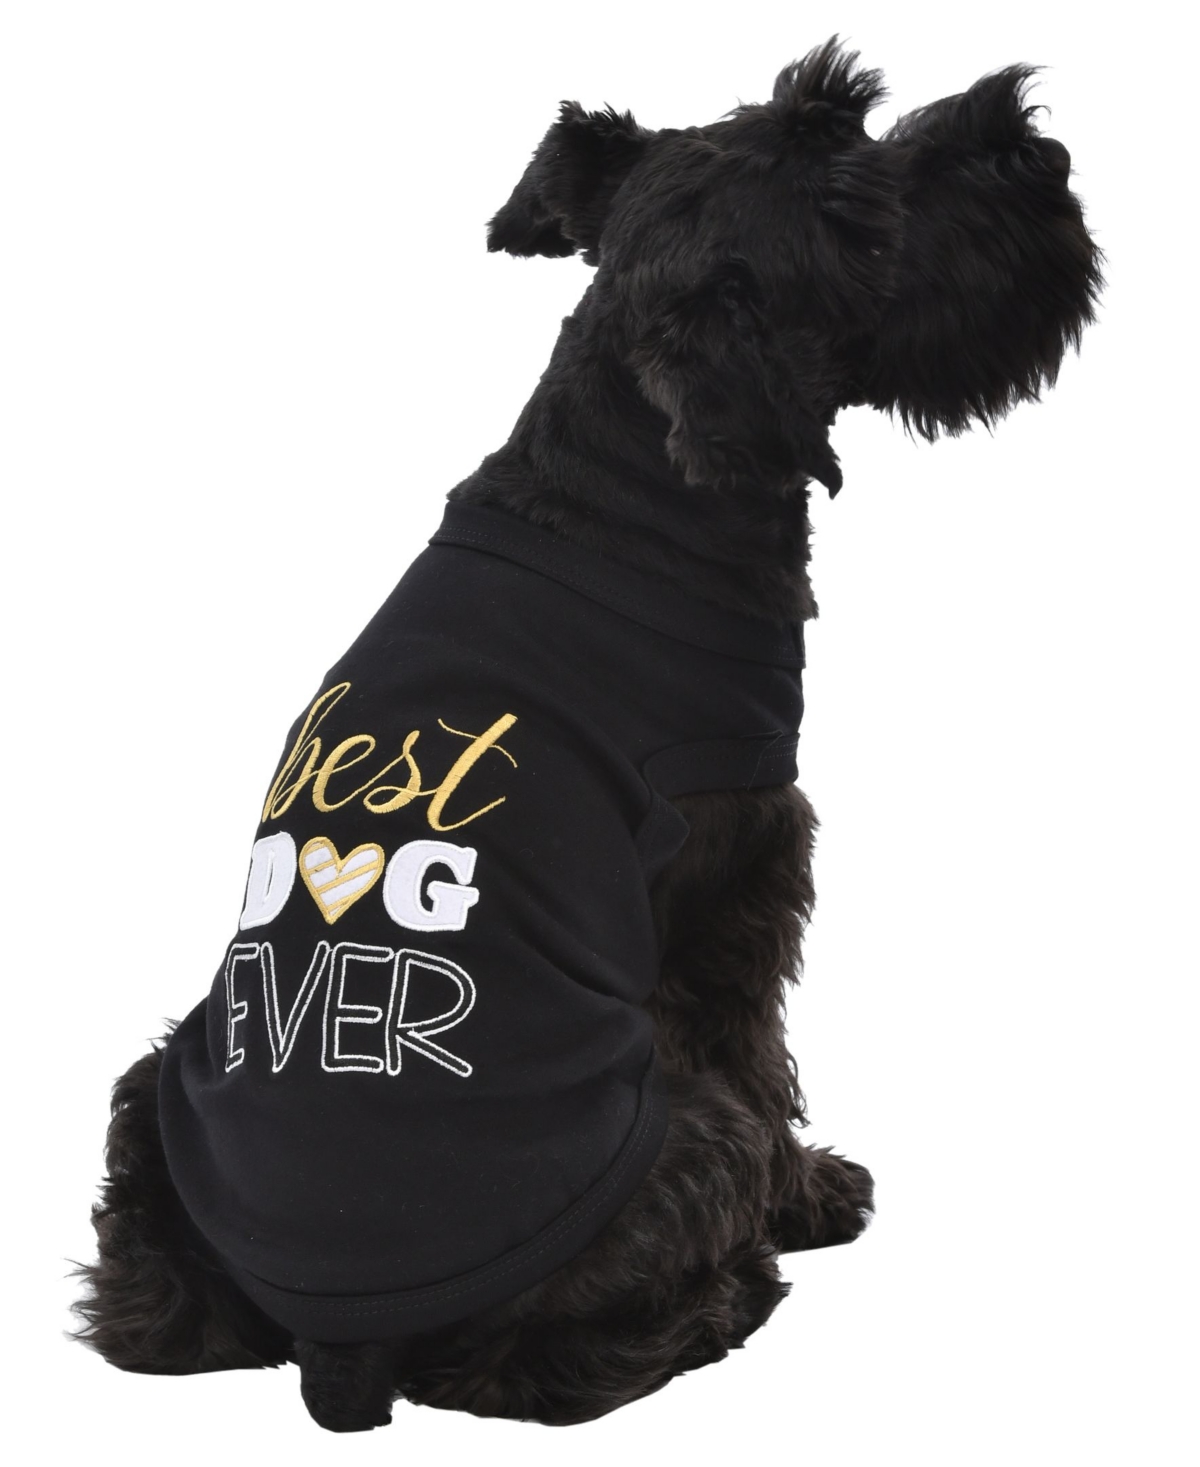 Best Dog Ever Dog T-Shirt - Black